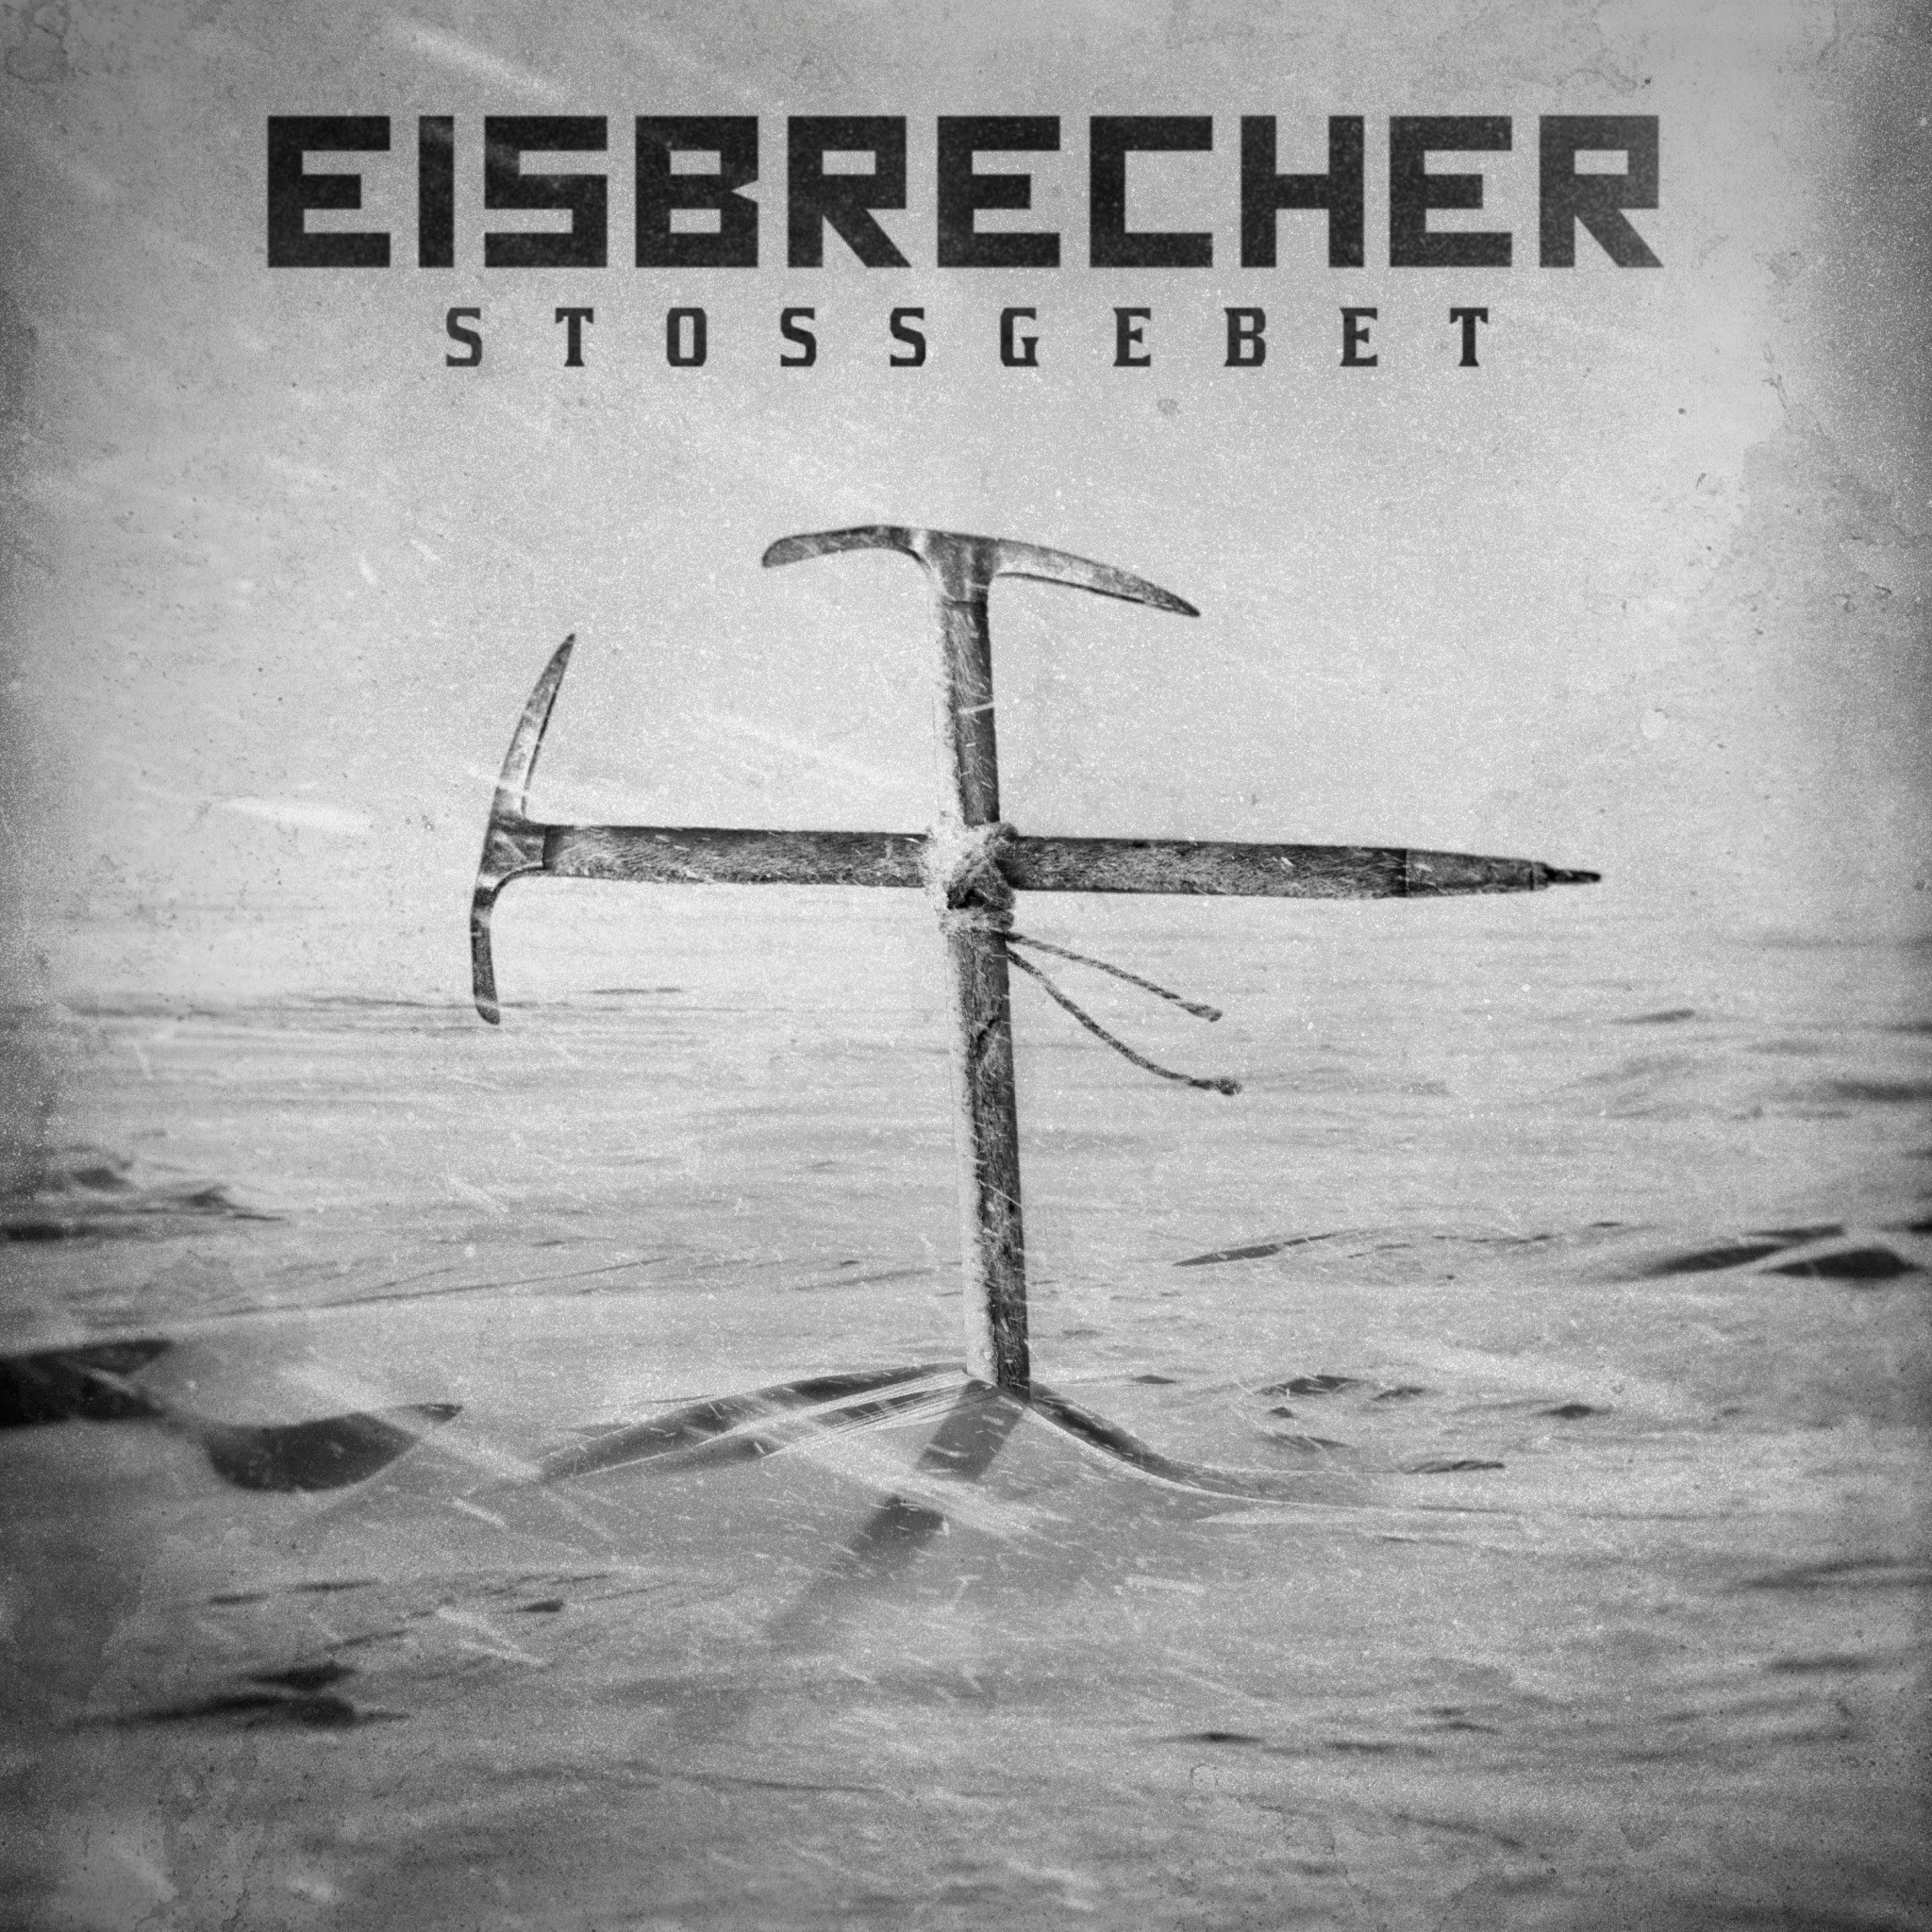 Eisbrecher rot wie. Обложки группы Eisbrecher. Eisbrecher обложки альбомов. Eisbrecher Постер. Eisbrecher Shock обложка.